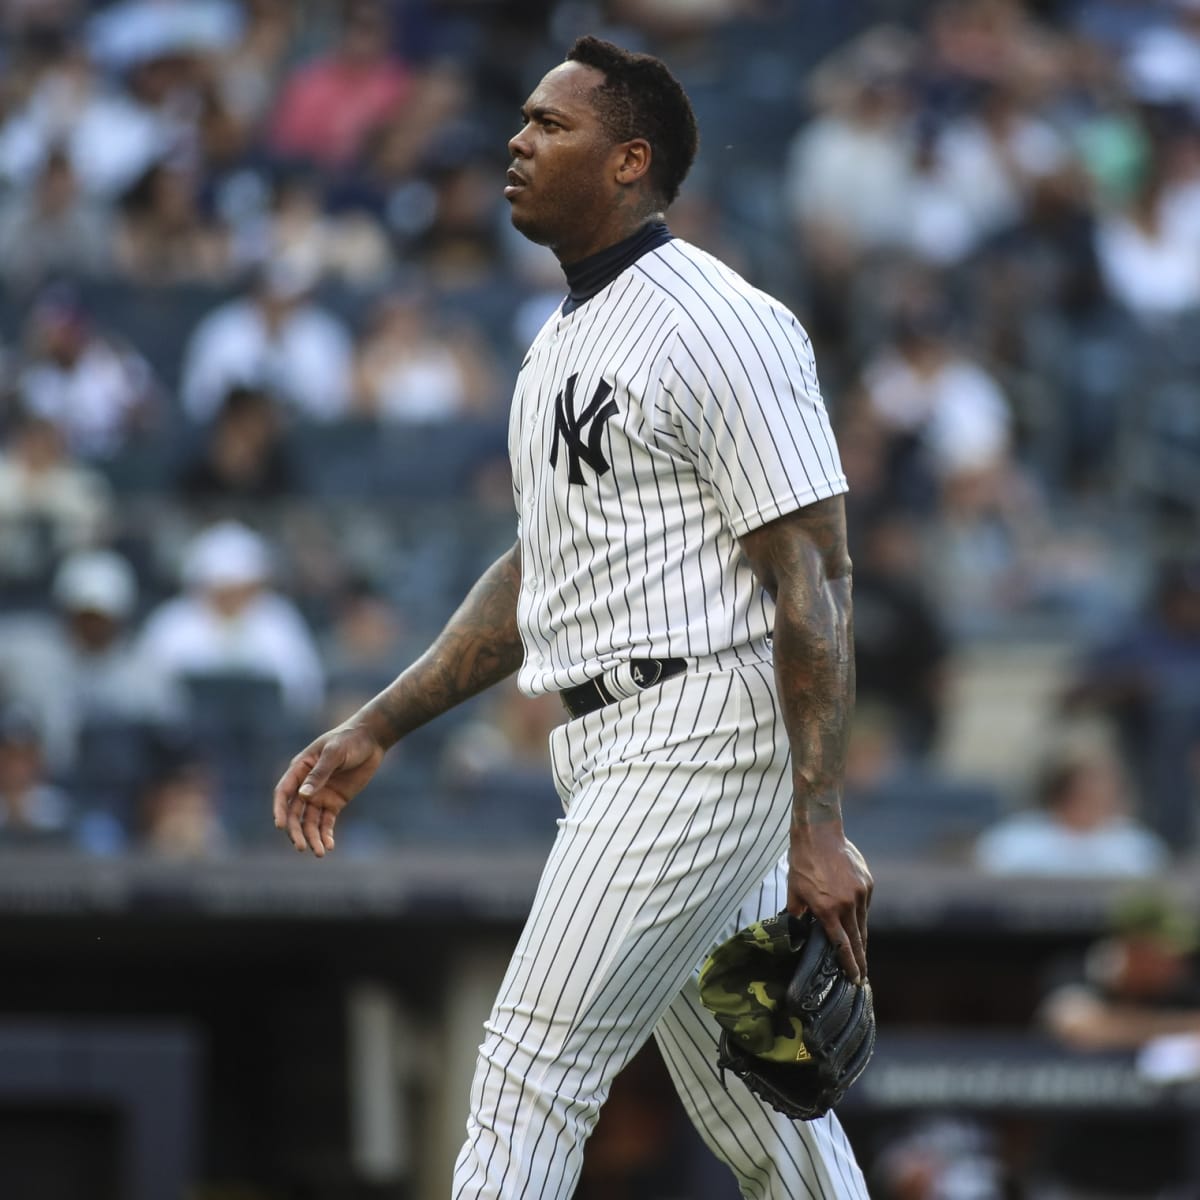 Aroldis Chapman struggles in his return to the Yankees